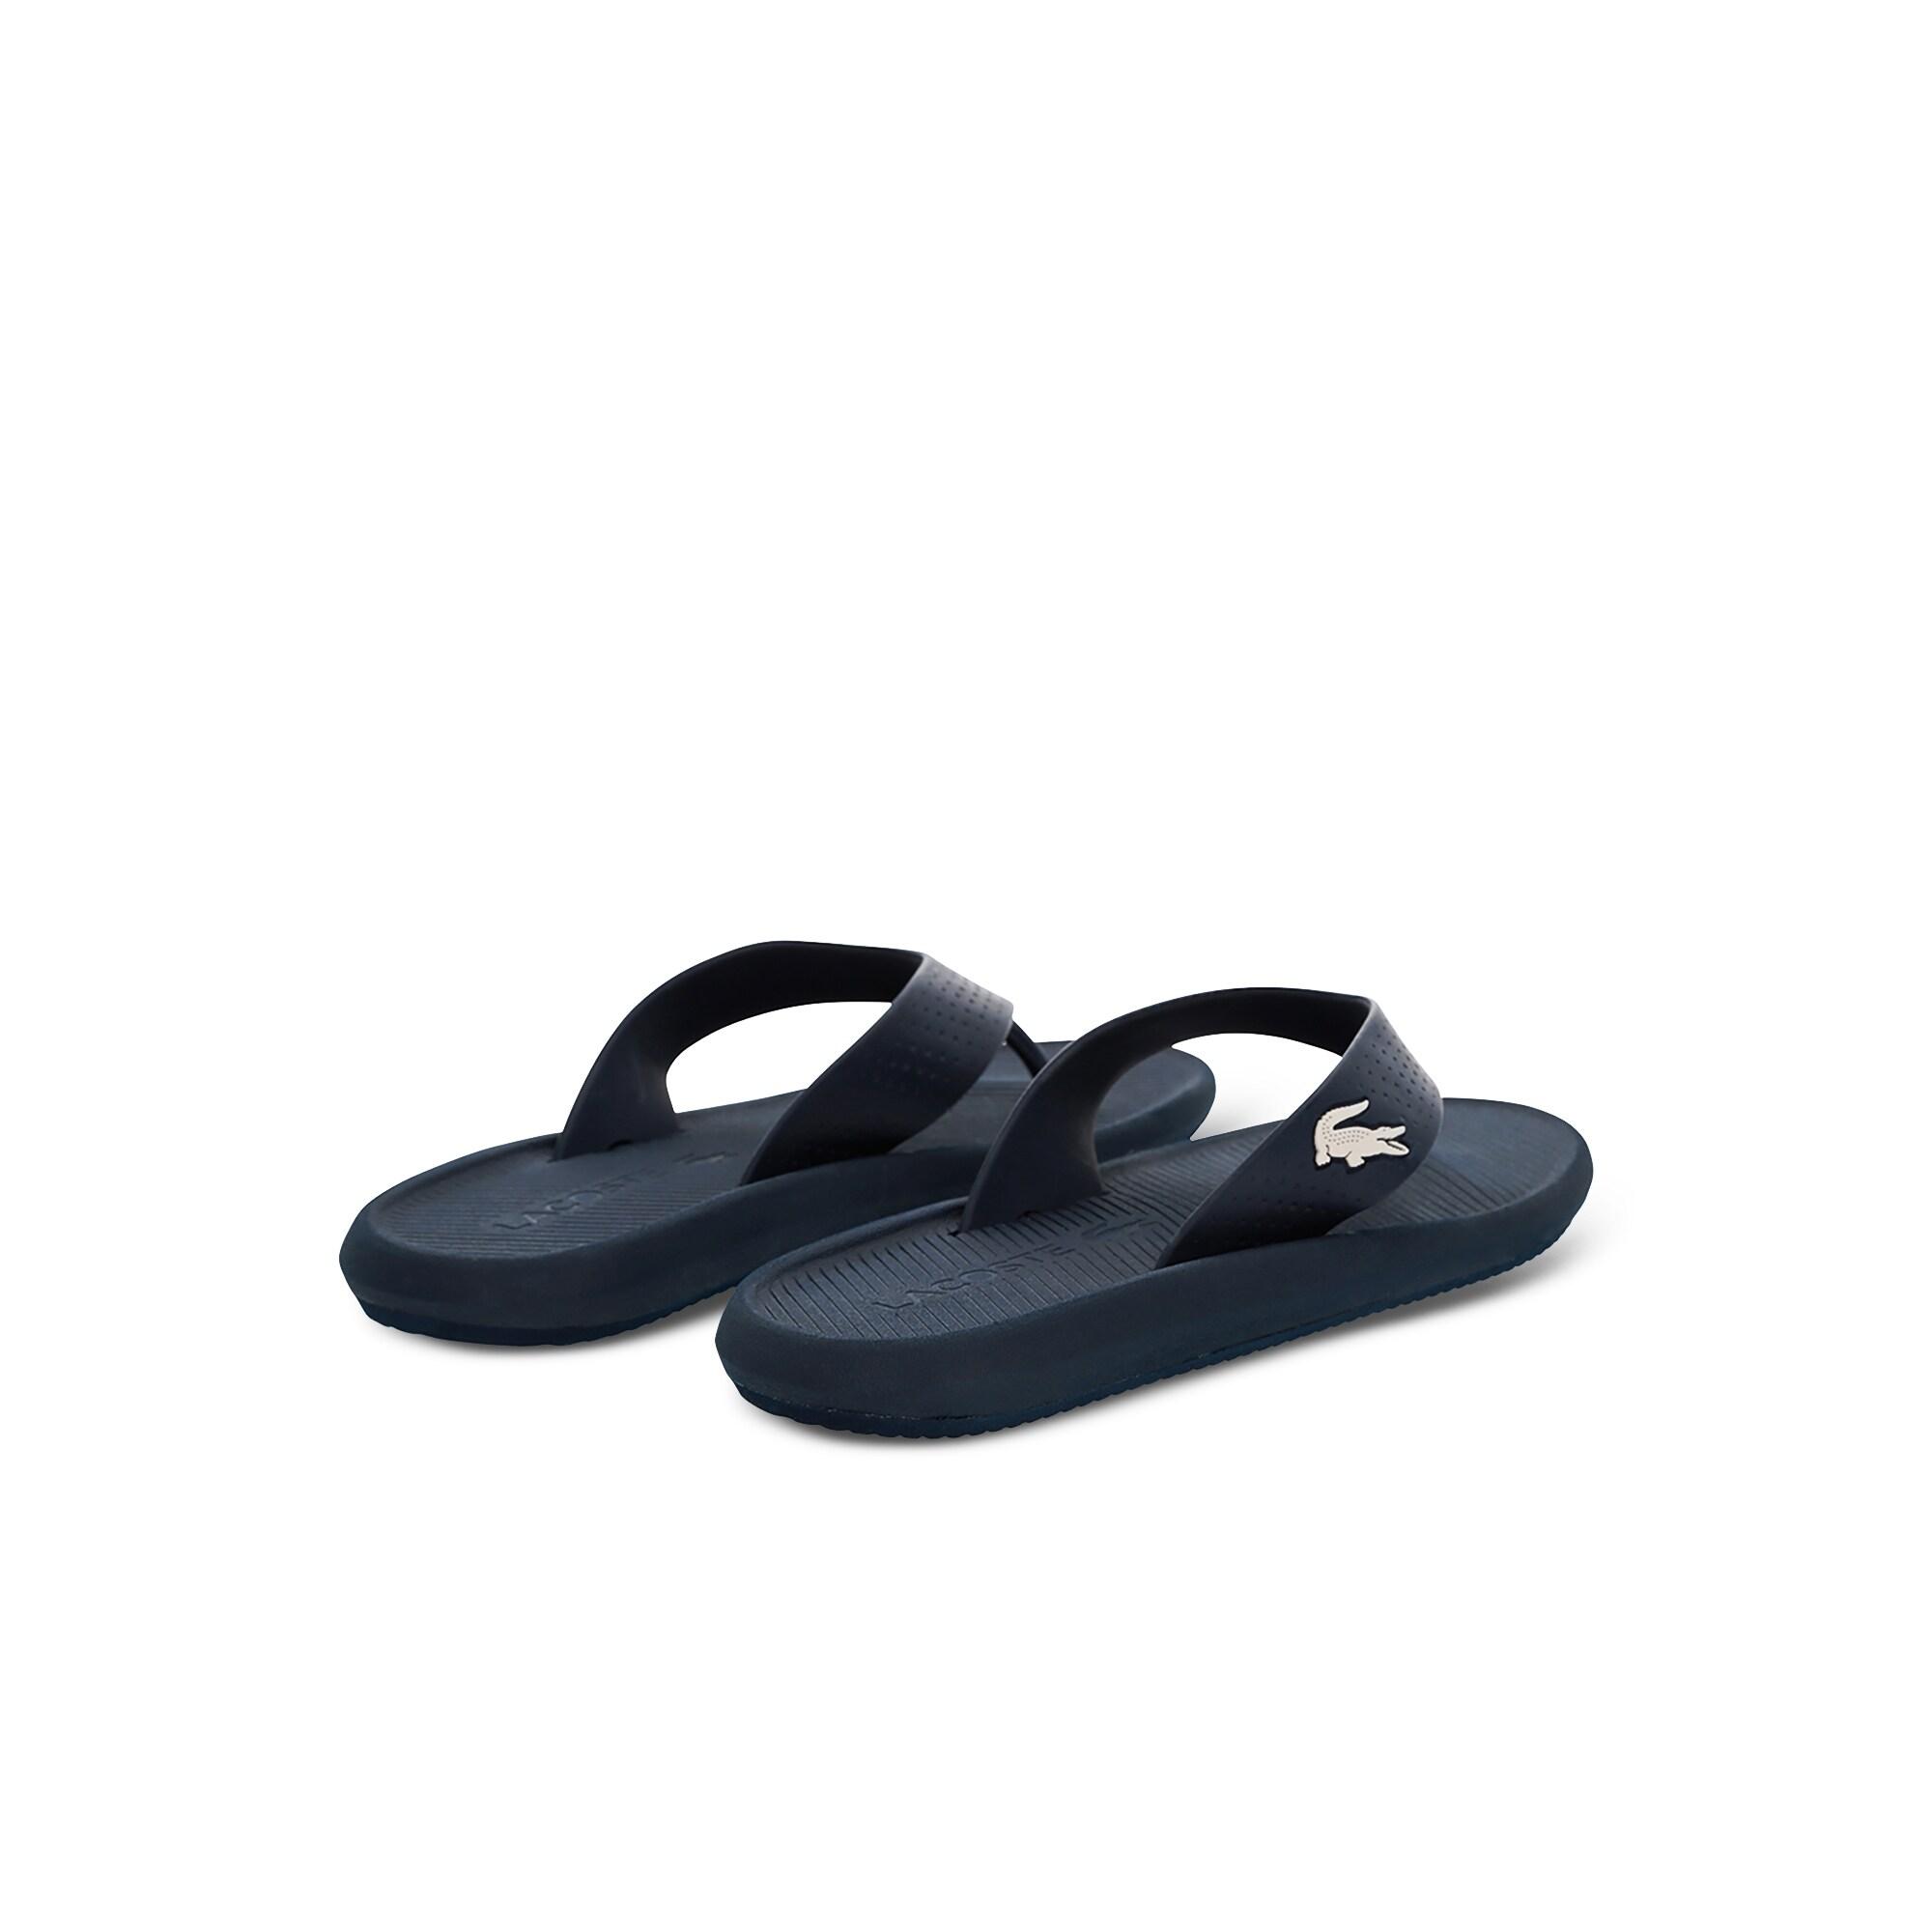 Lacoste Croco Sandal 219 1 Cma Erkek Lacivert - Beyaz Terlik. 5